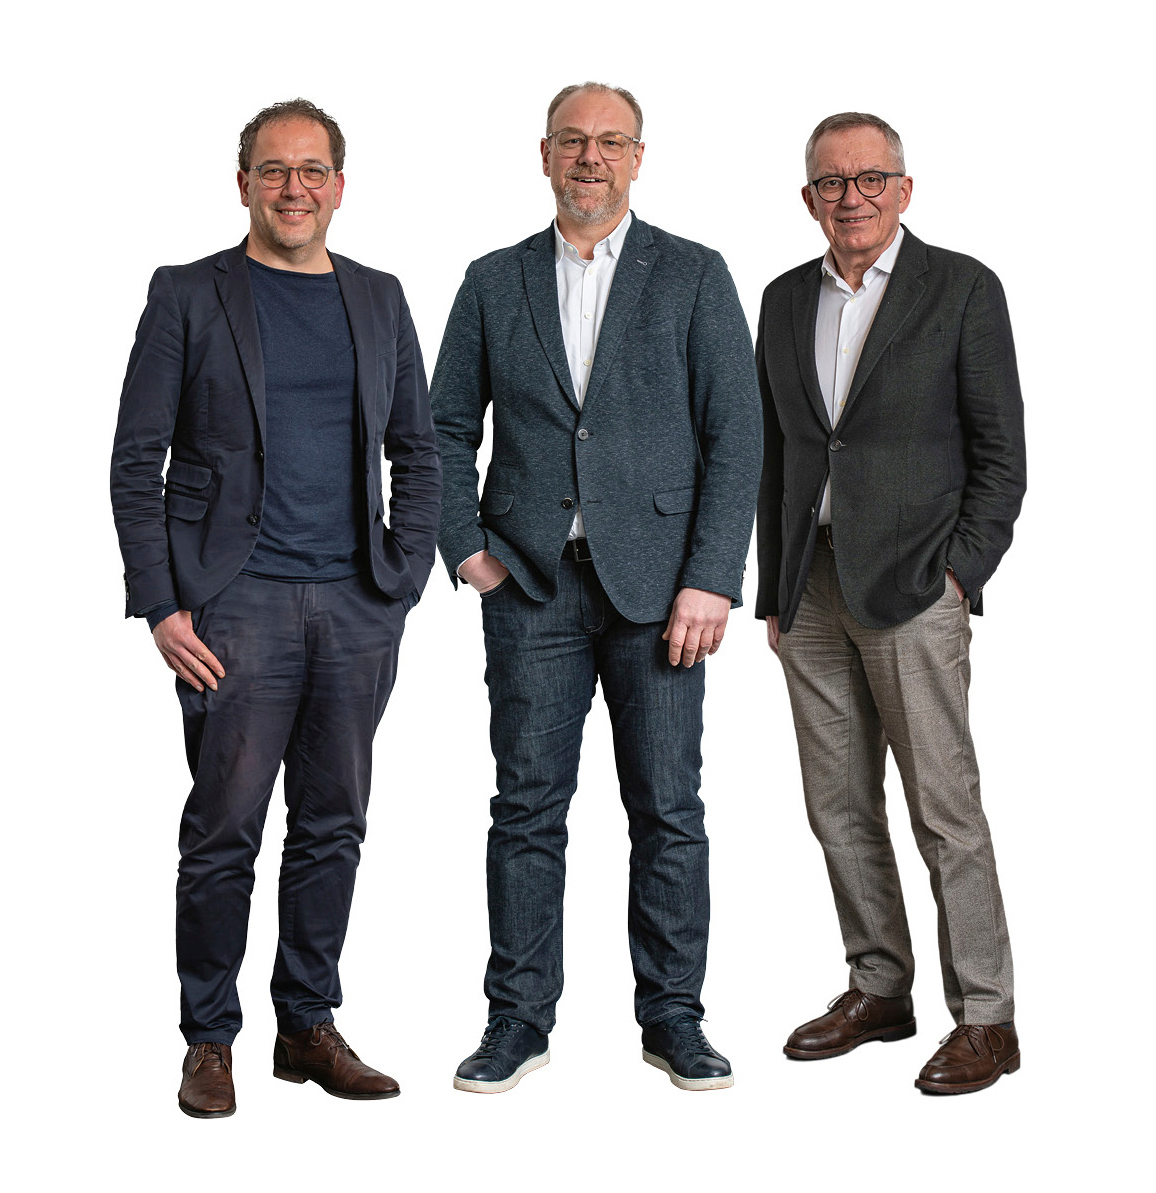 Die Geschäftsführer: (v. l.) Bernhard Pilz, Sven Schrothe und Peter Nüdling. Die Aufnahme wurde unter Corona-Auflagen erstellt, es handelt sich dabei um eine Fotomontage.